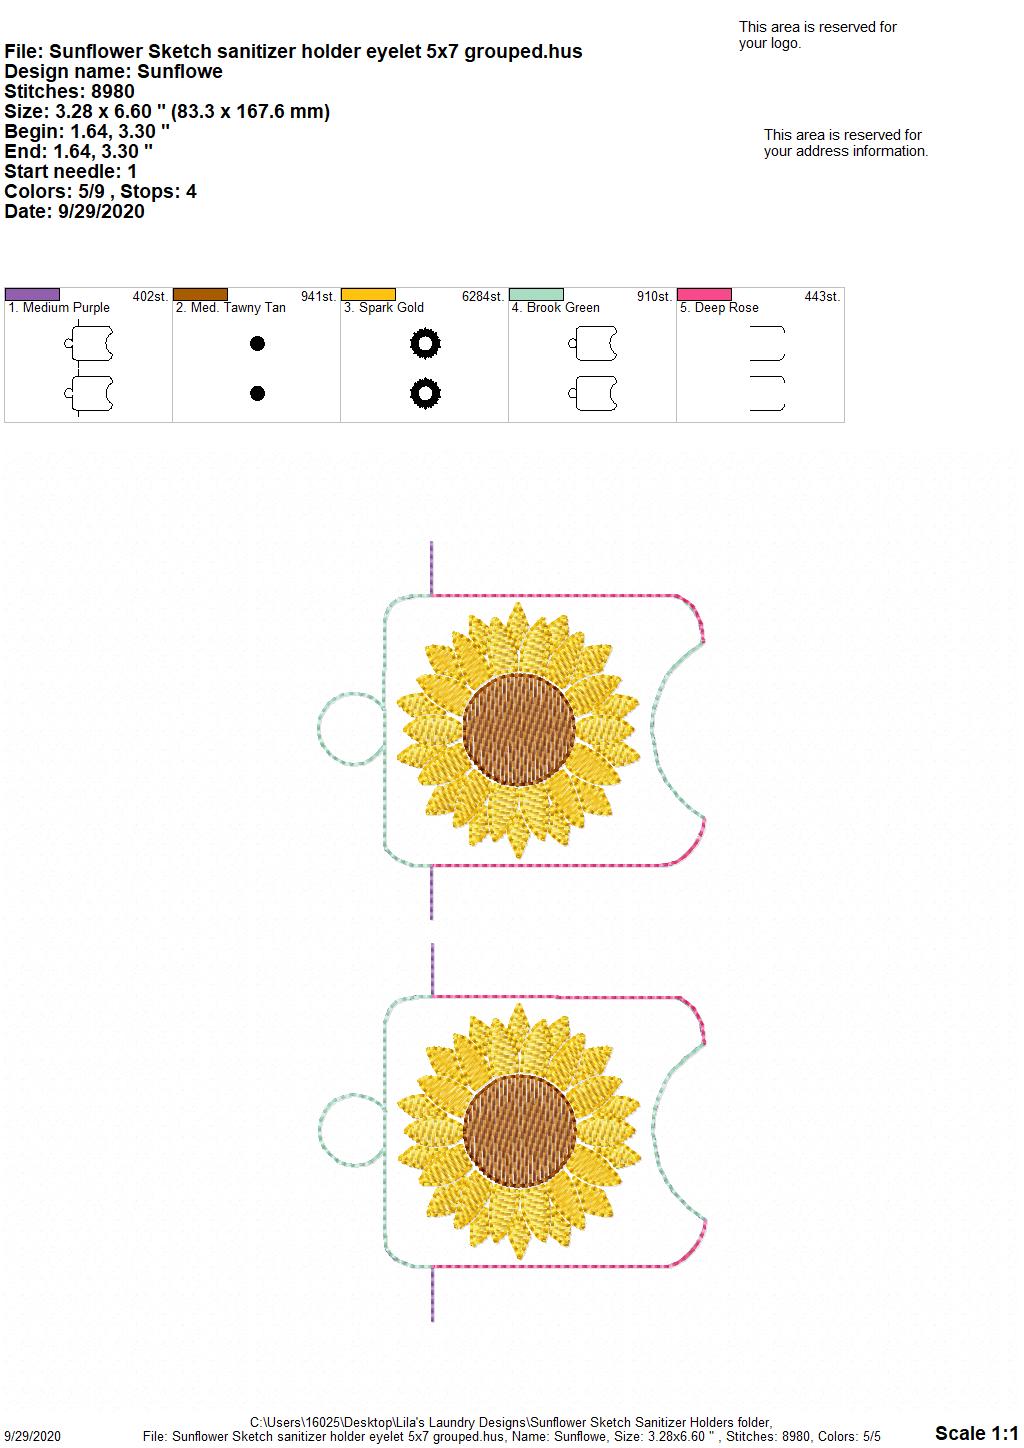 Sunflower Sketch Sanitizer Holders - DIGITAL Embroidery DESIGN